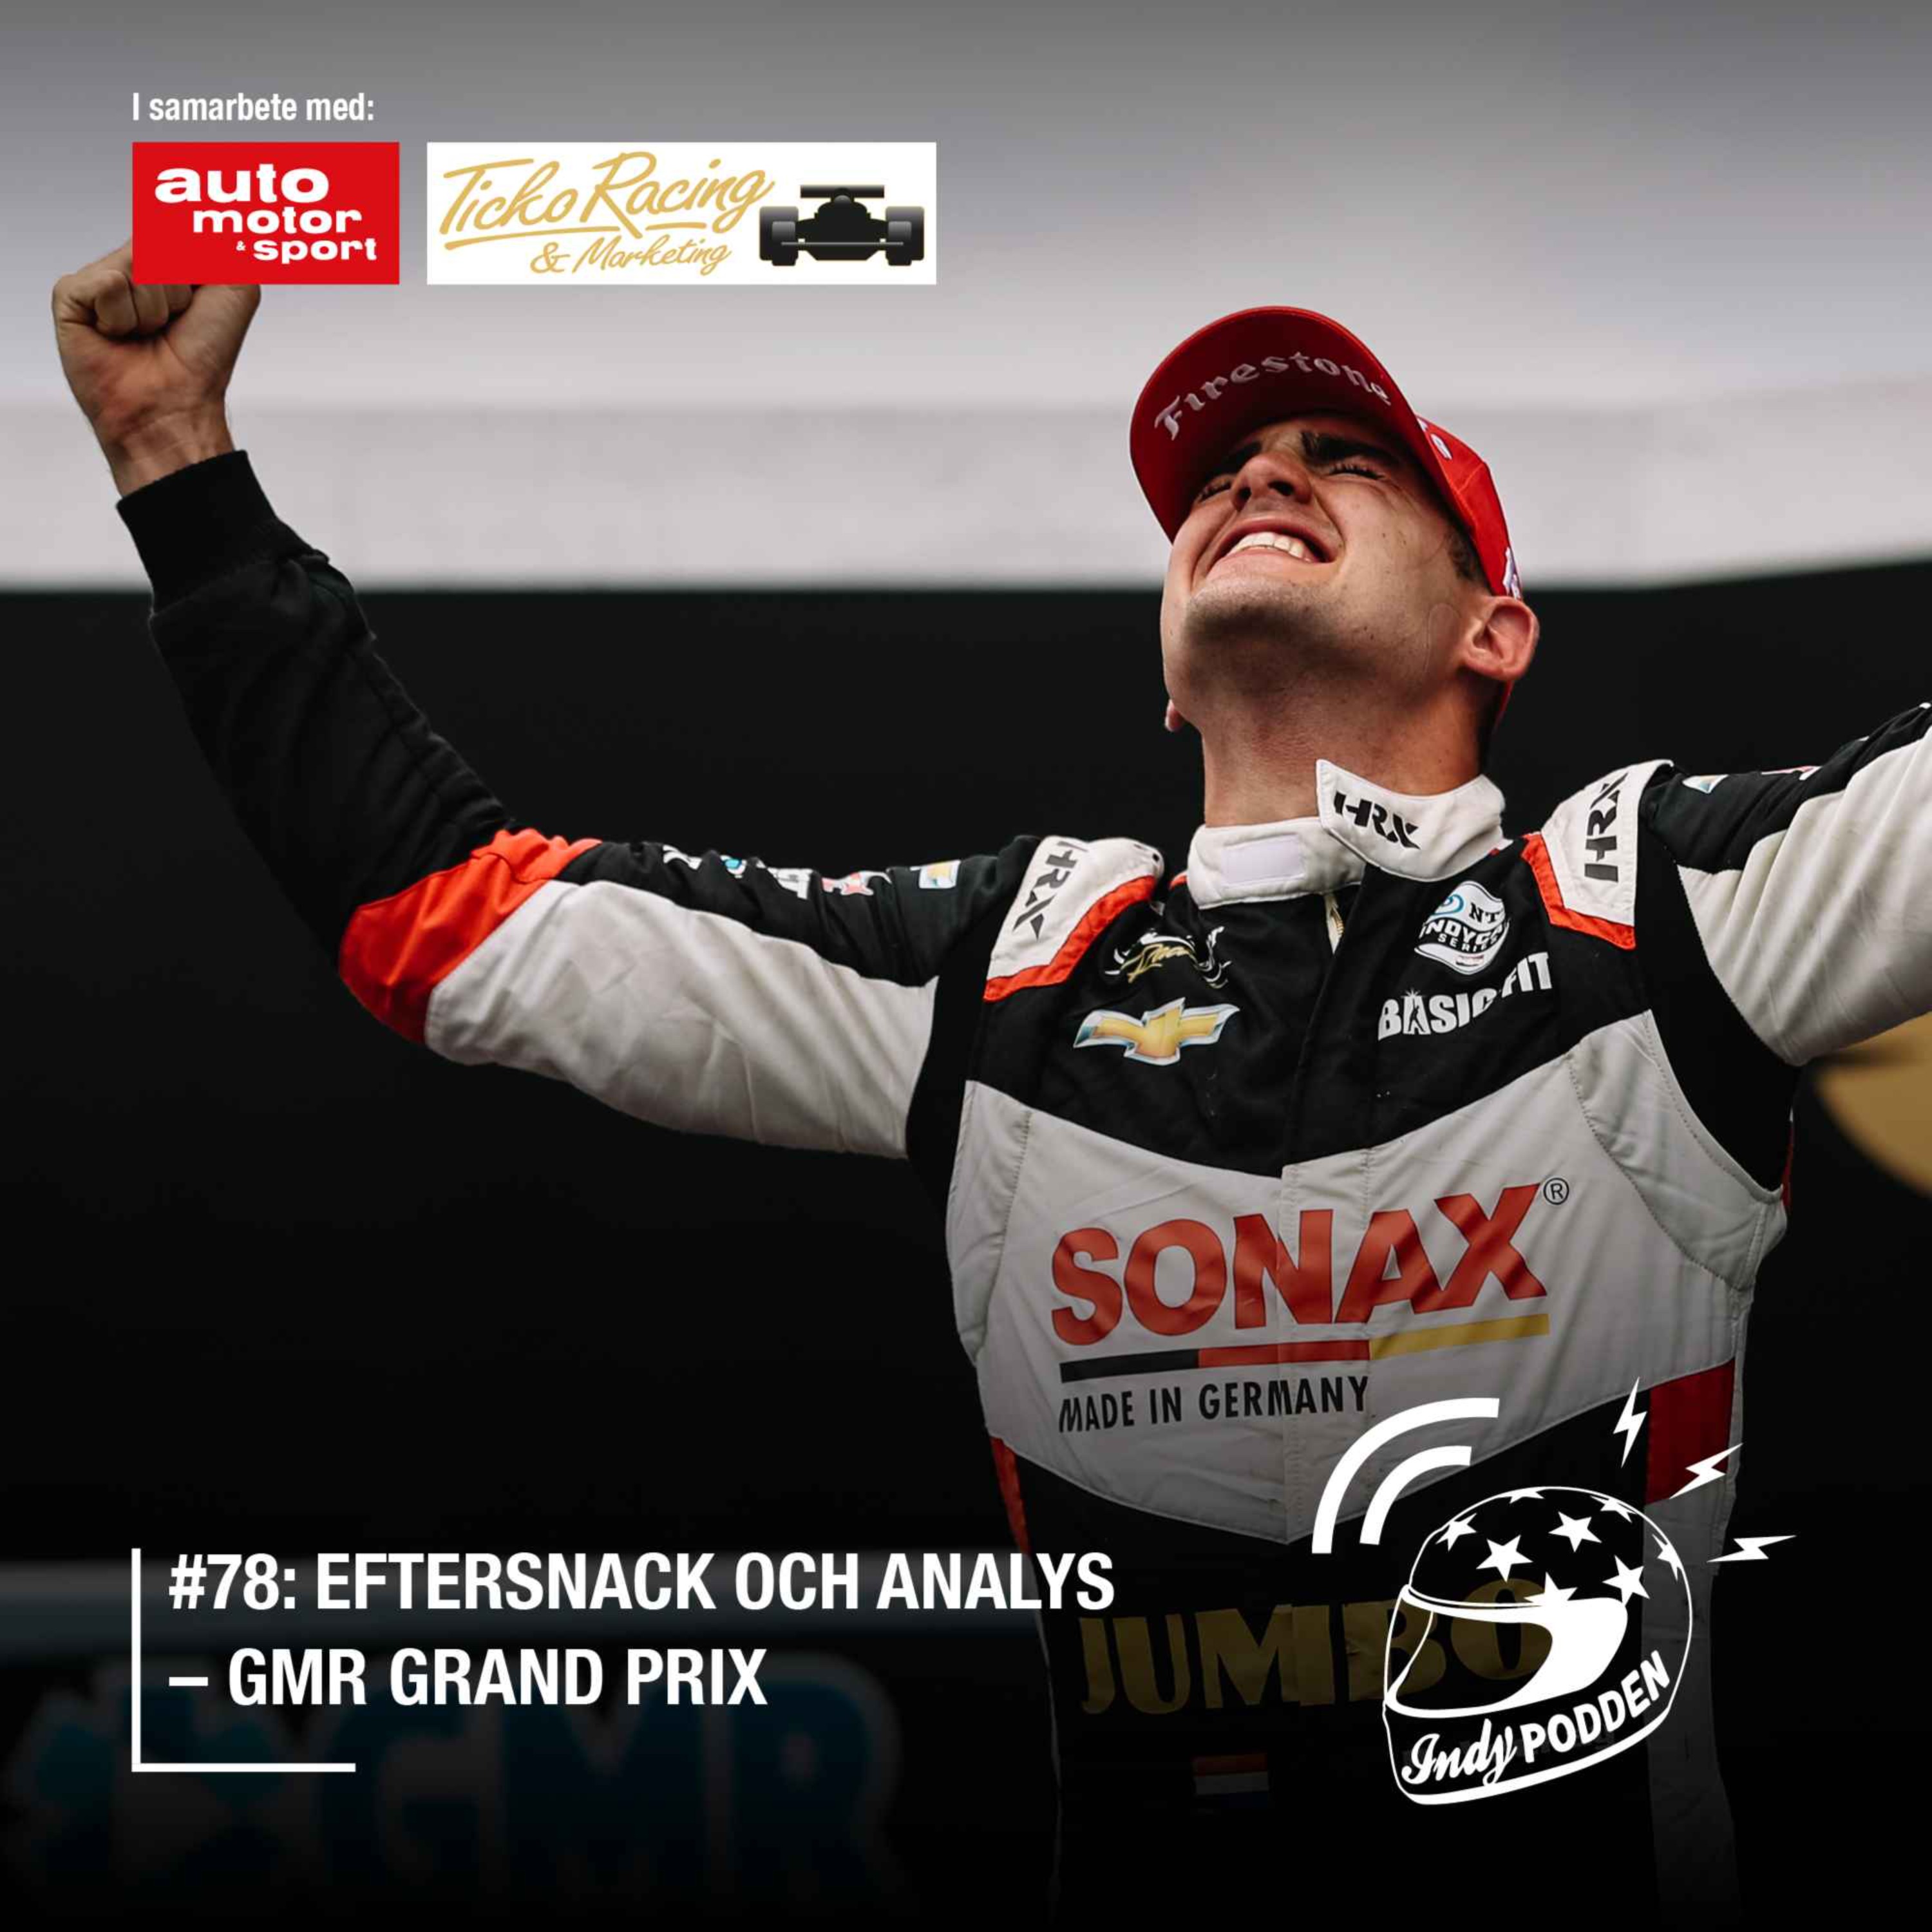 #78: Eftersnack och analys – GMR Grand Prix